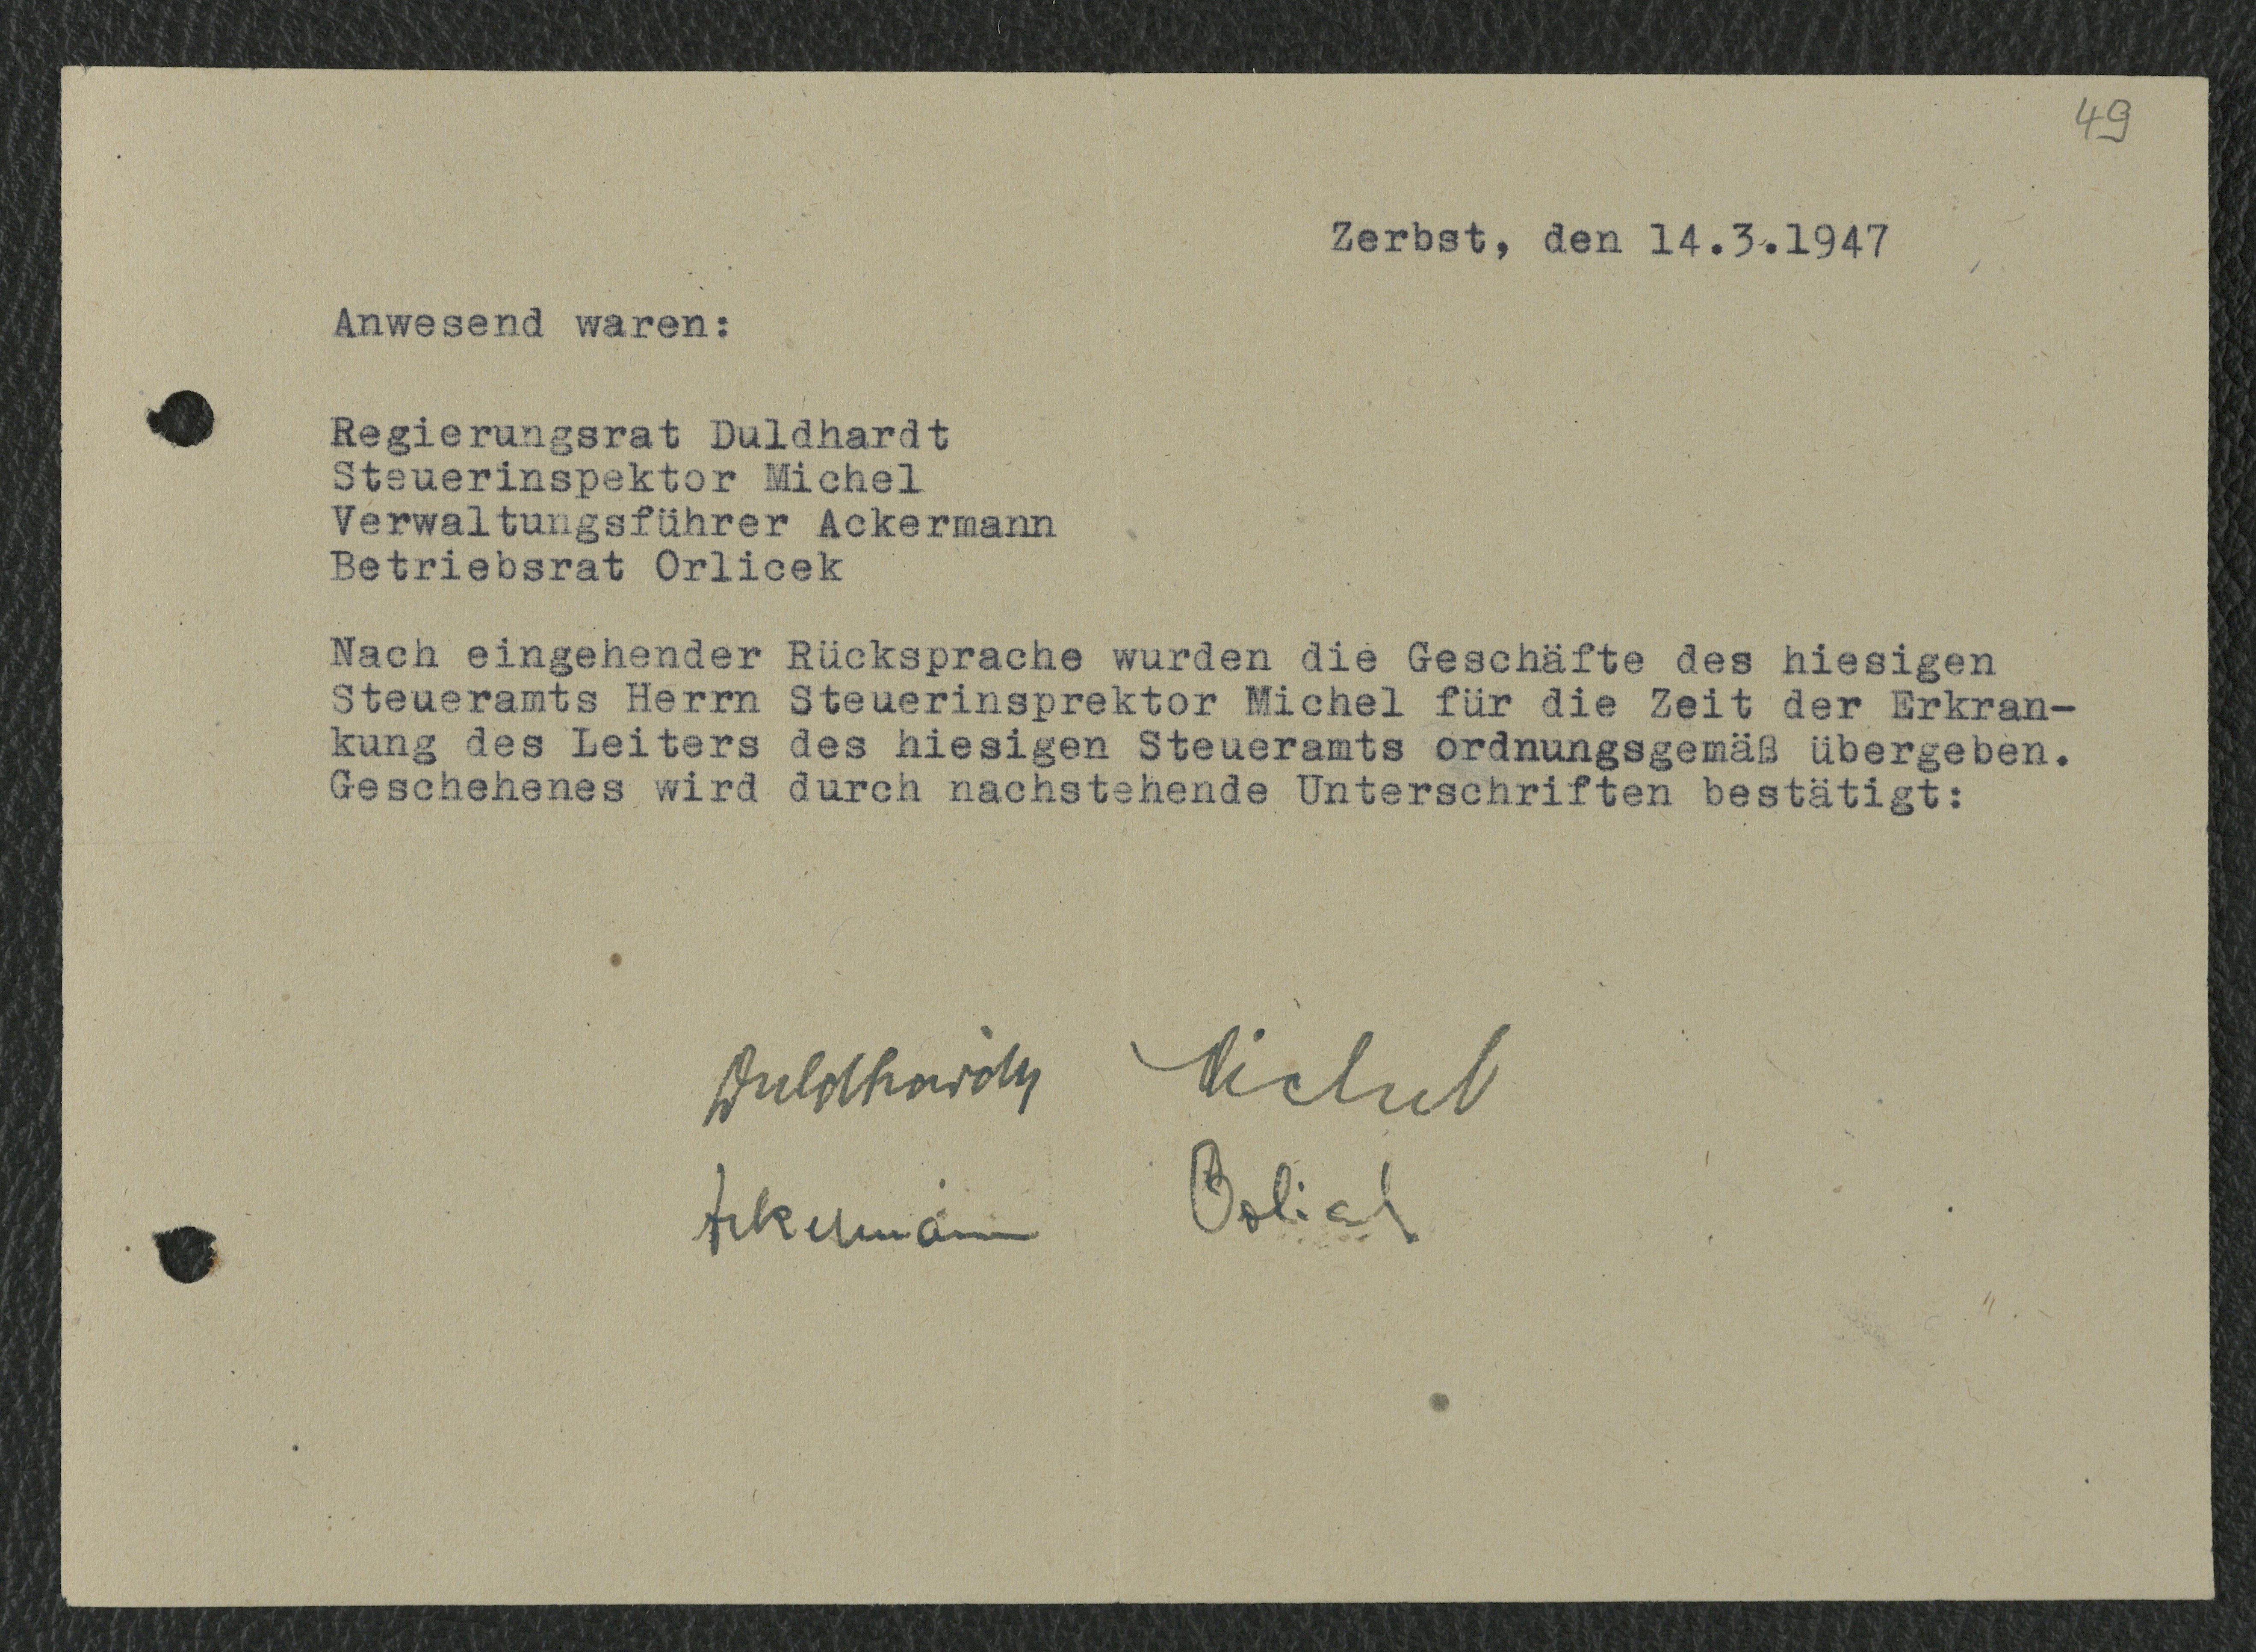 Erklärung zum Geschäftsübergang während des Krankenstandes von Karl Duldhardt, 14. März 1947 (Museum Wolmirstedt RR-F)